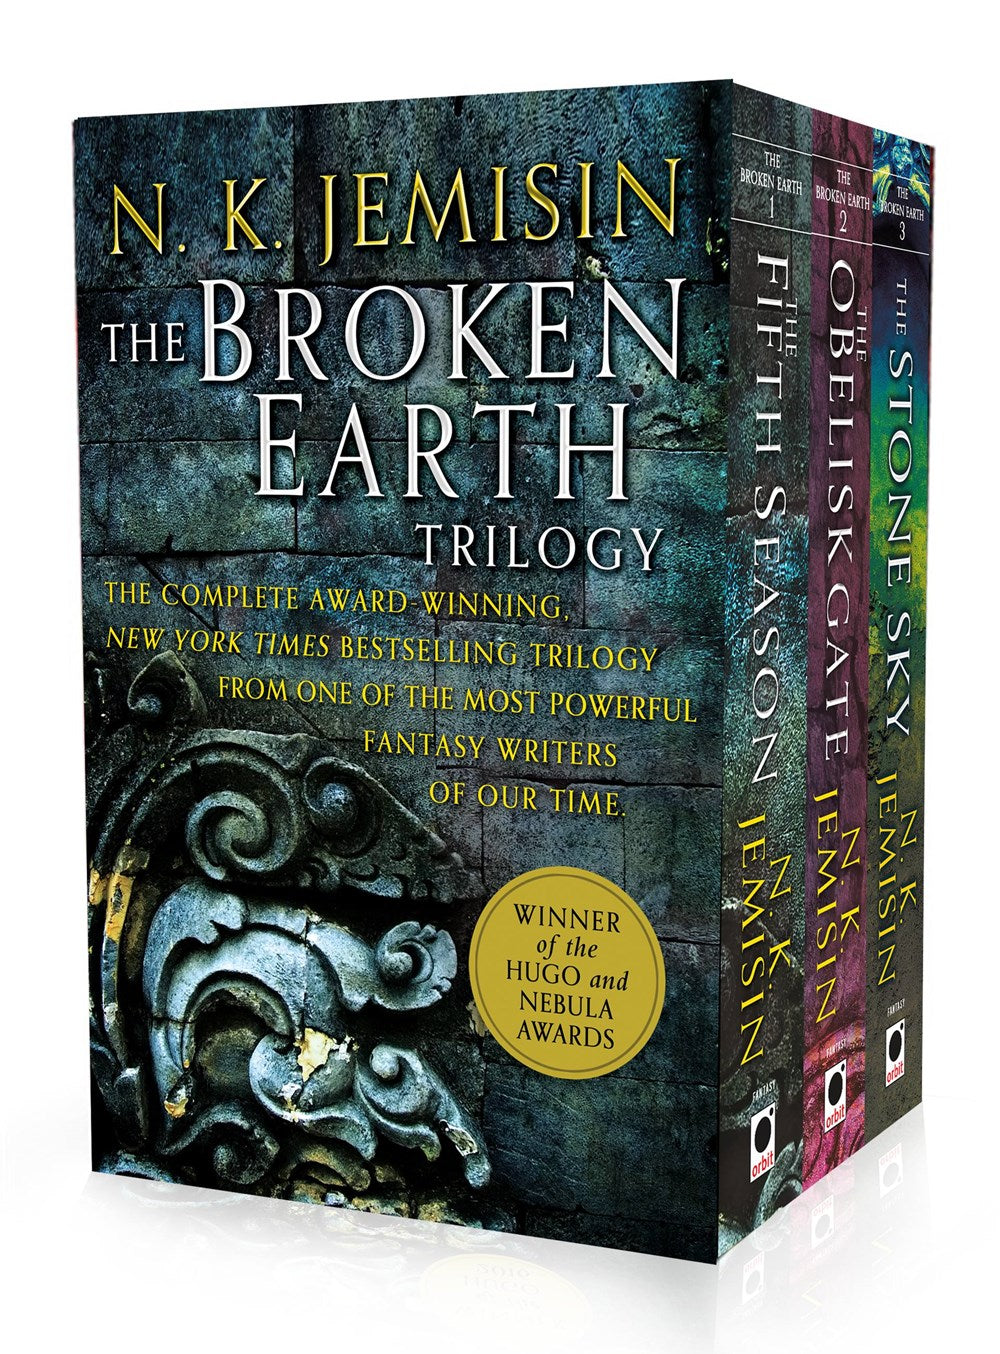 The Broken Earth Trilogy by N.K. Jemisin